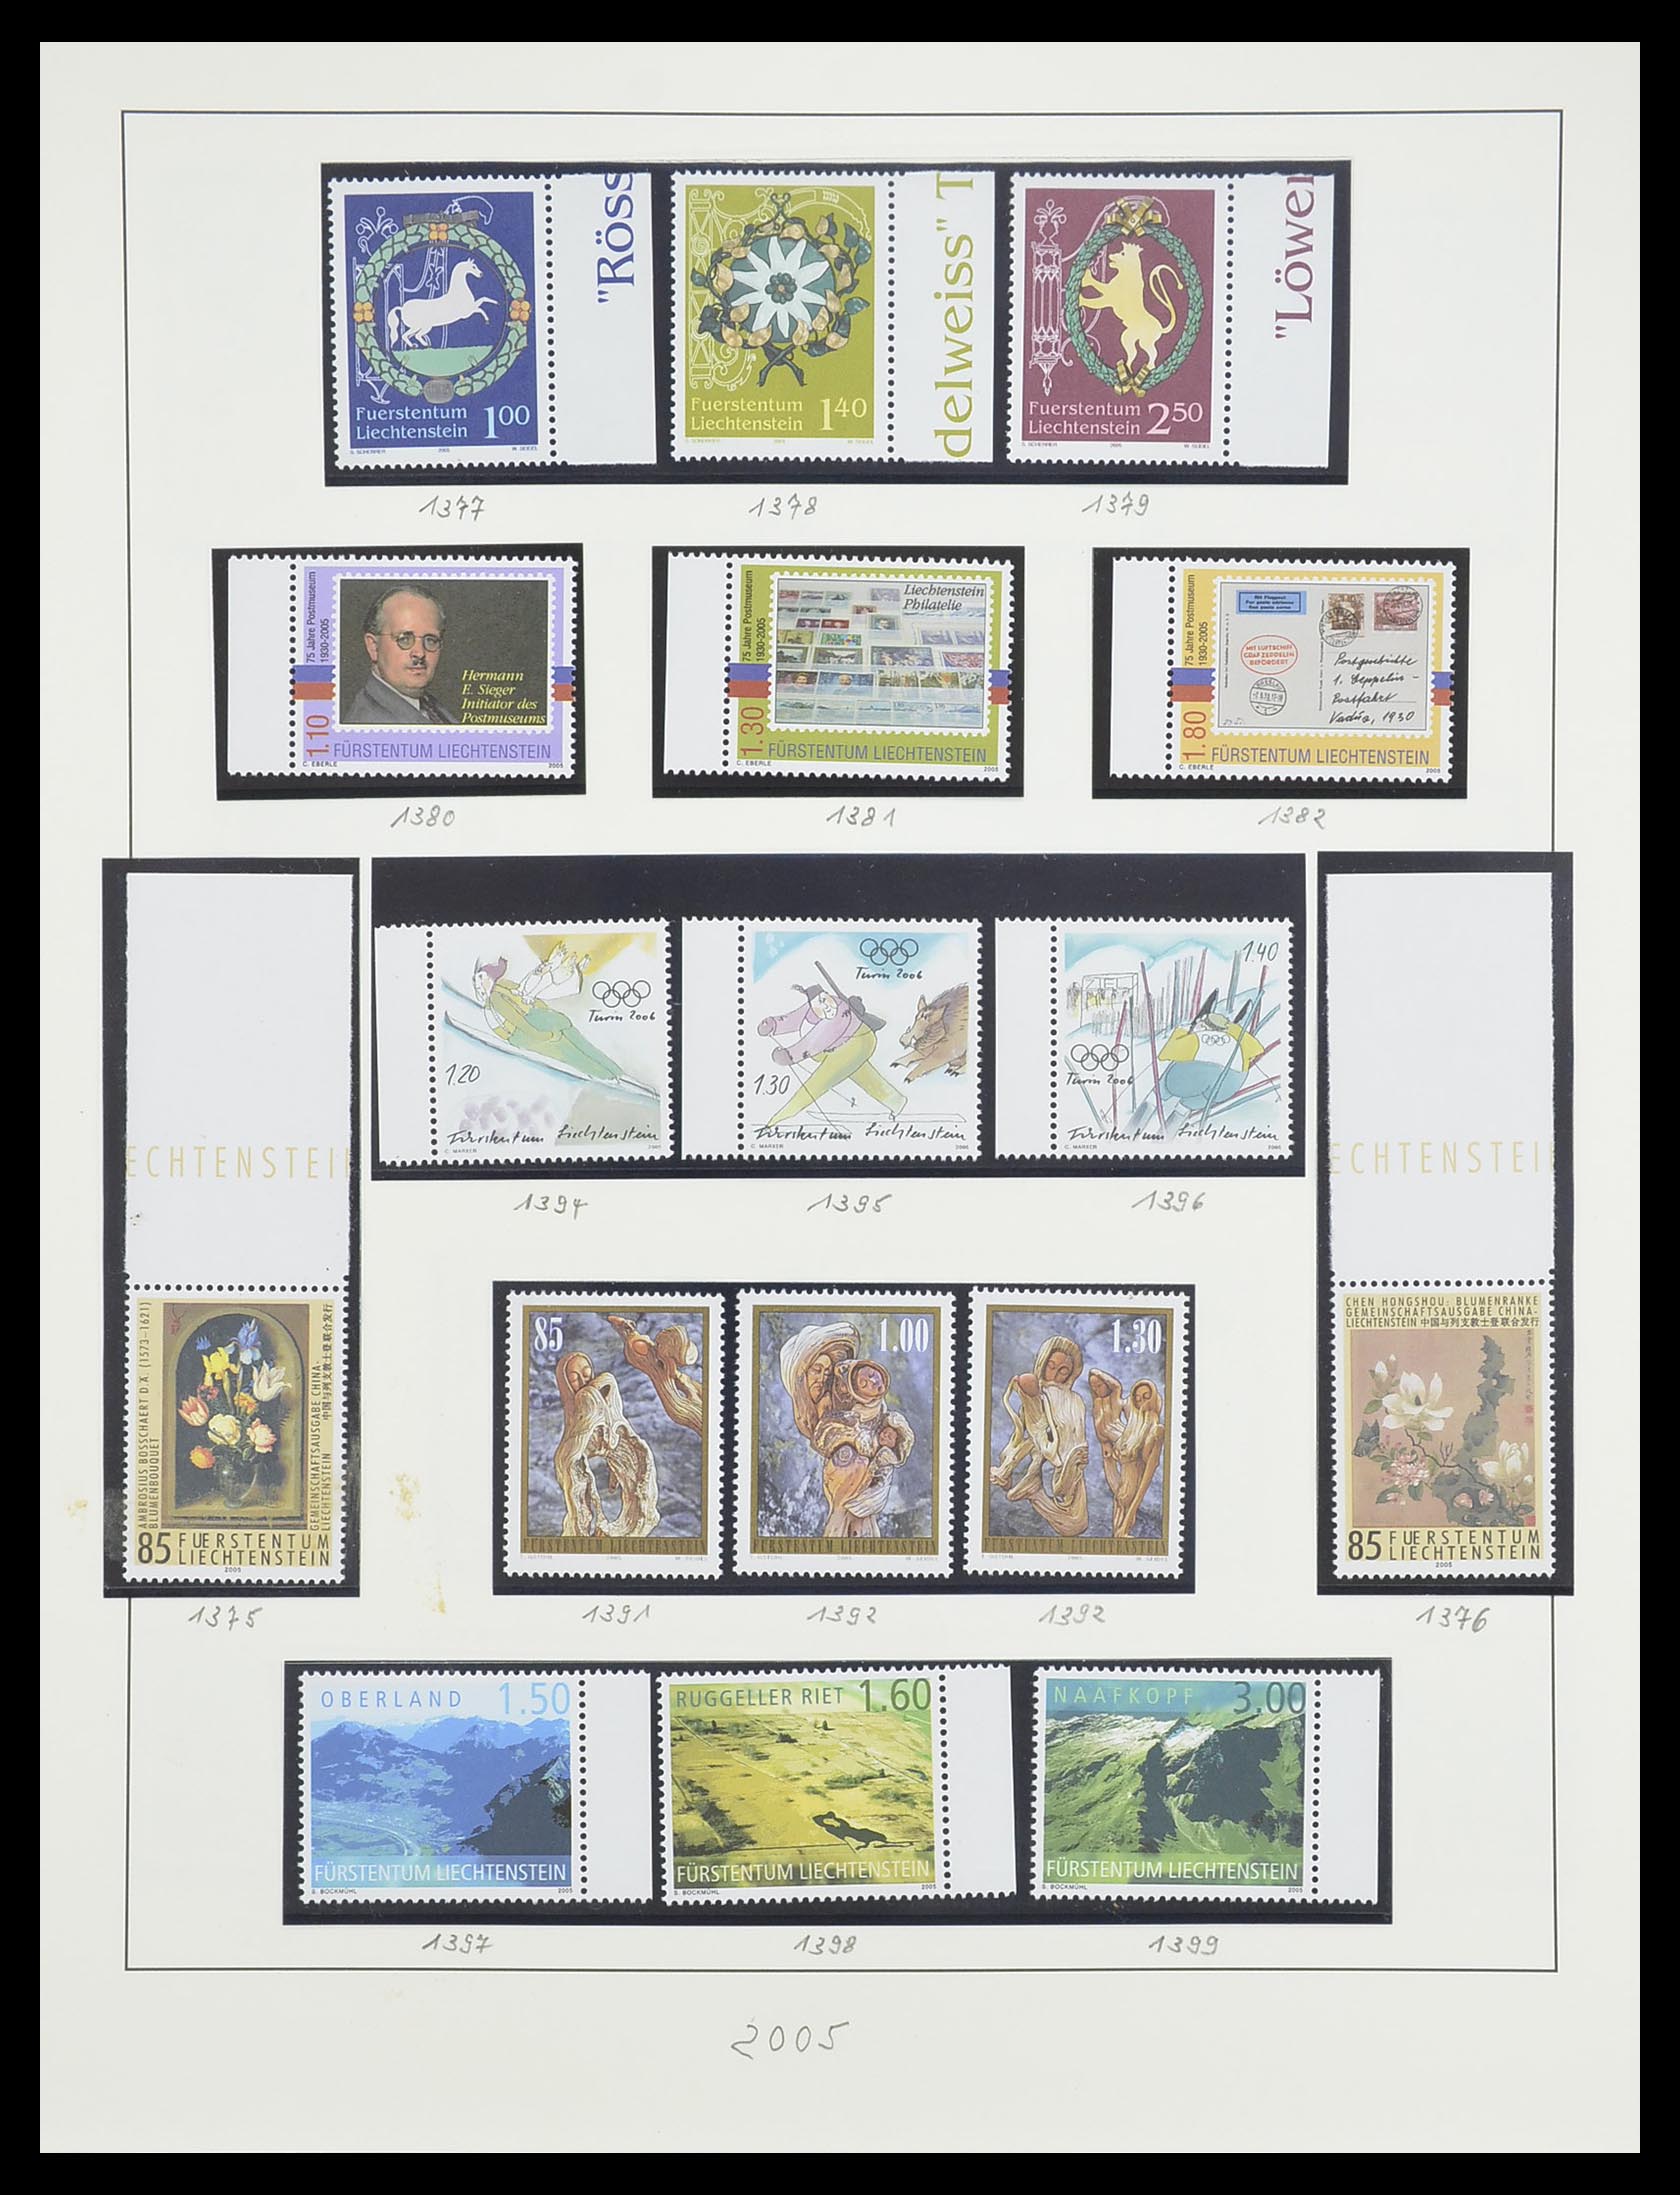 33493 200 - Stamp collection 33493 Liechtenstein 1912-2008.